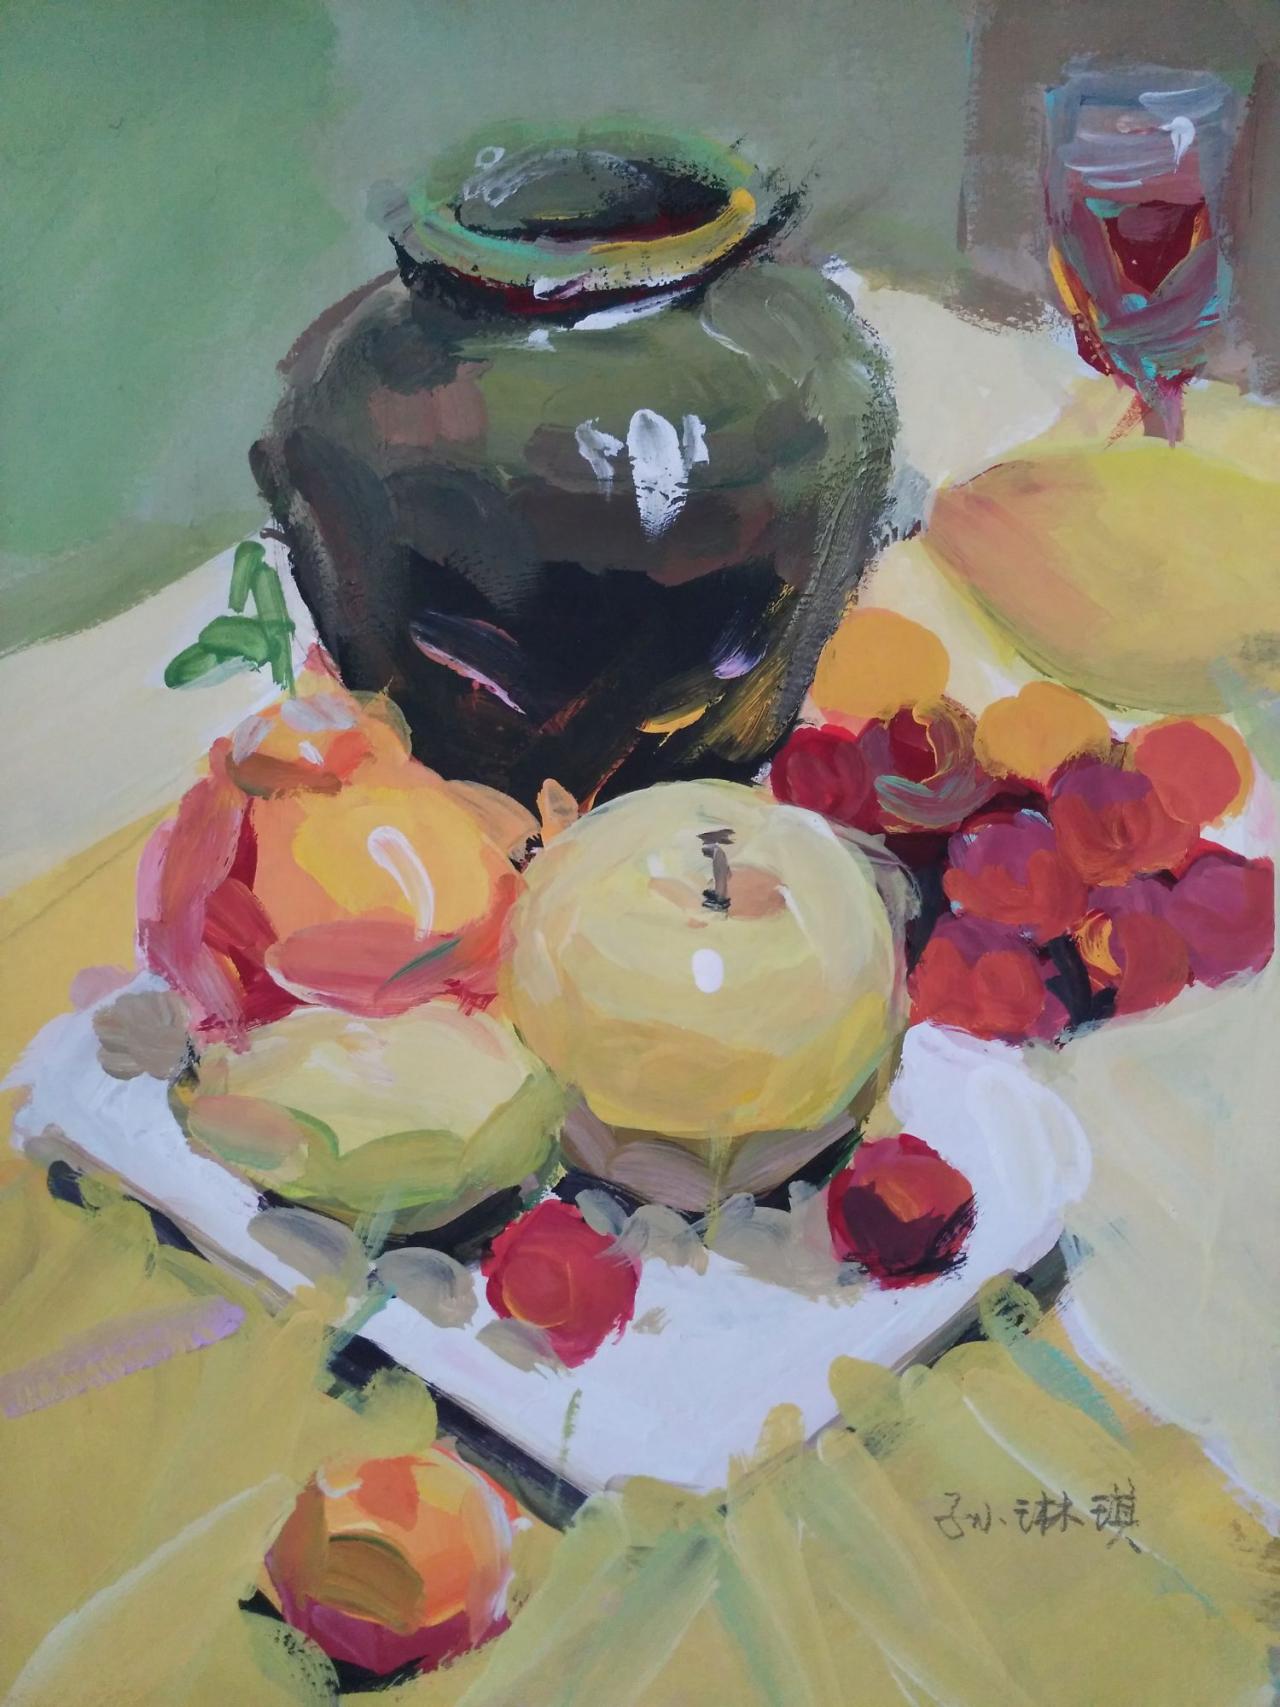 水粉静物 陶罐、苹果、梨、葡萄、盘子等 孙琳琪画